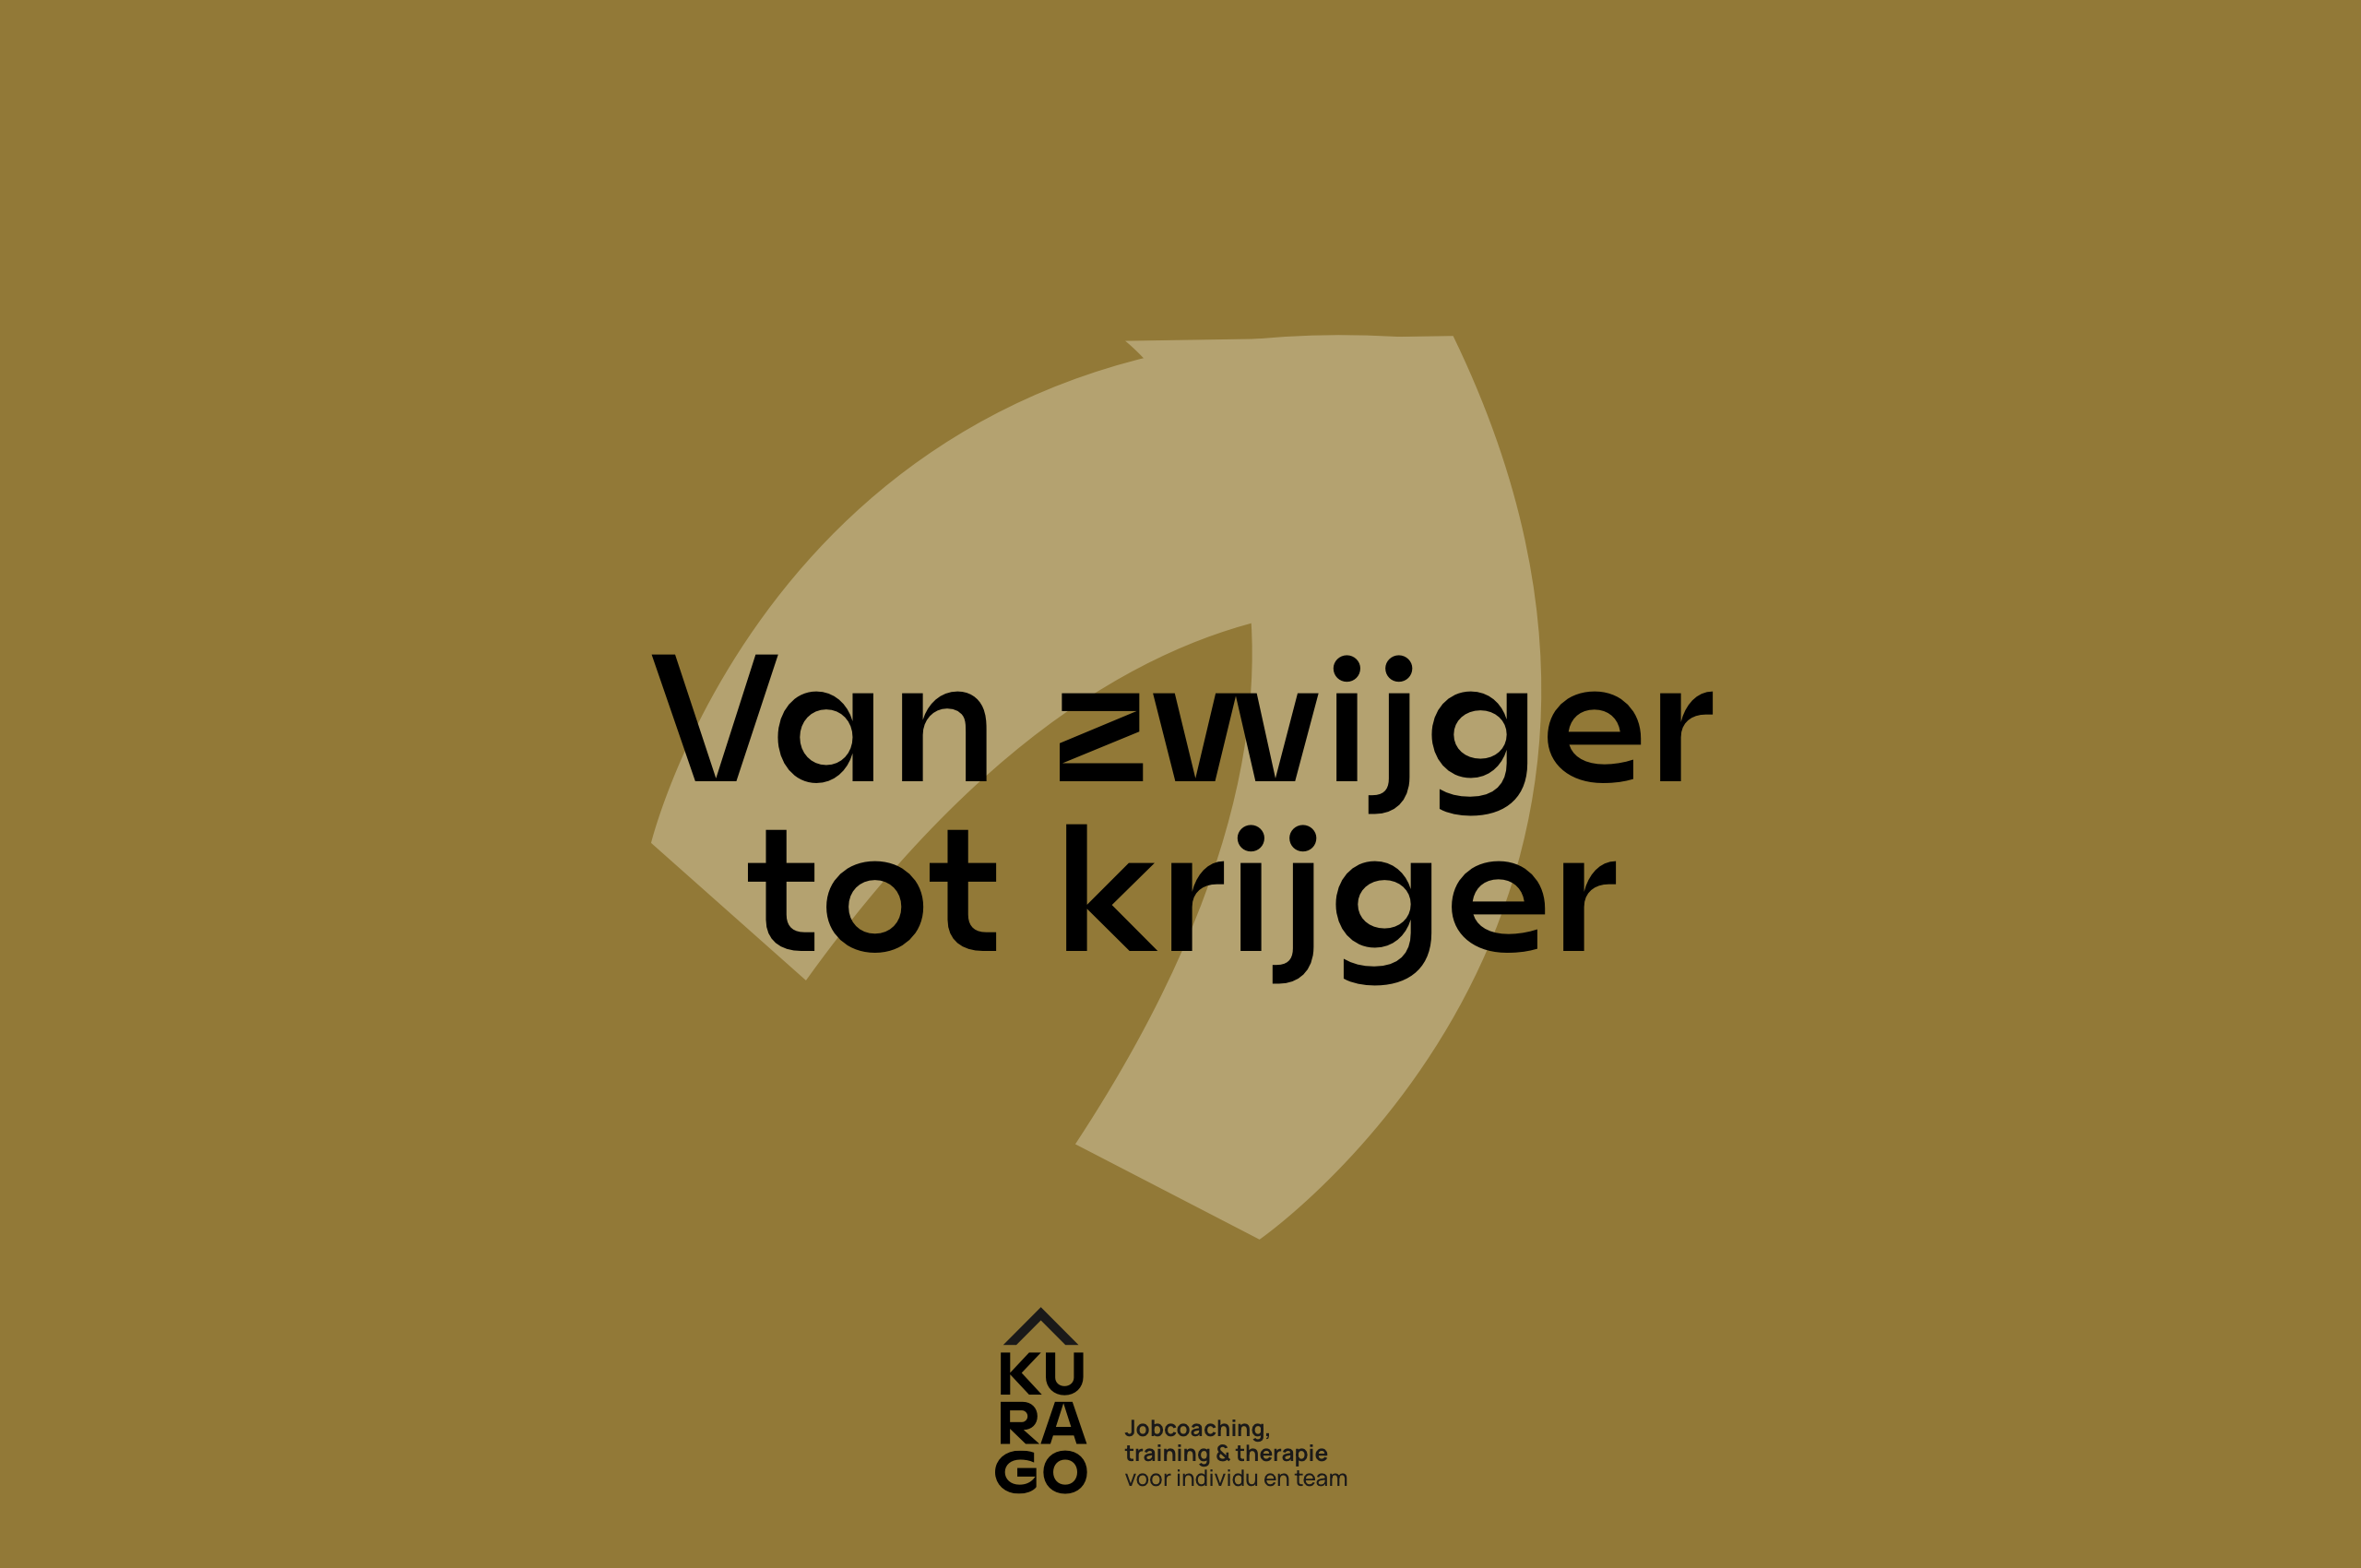 10_Kurago_LexTurner_logo-branding